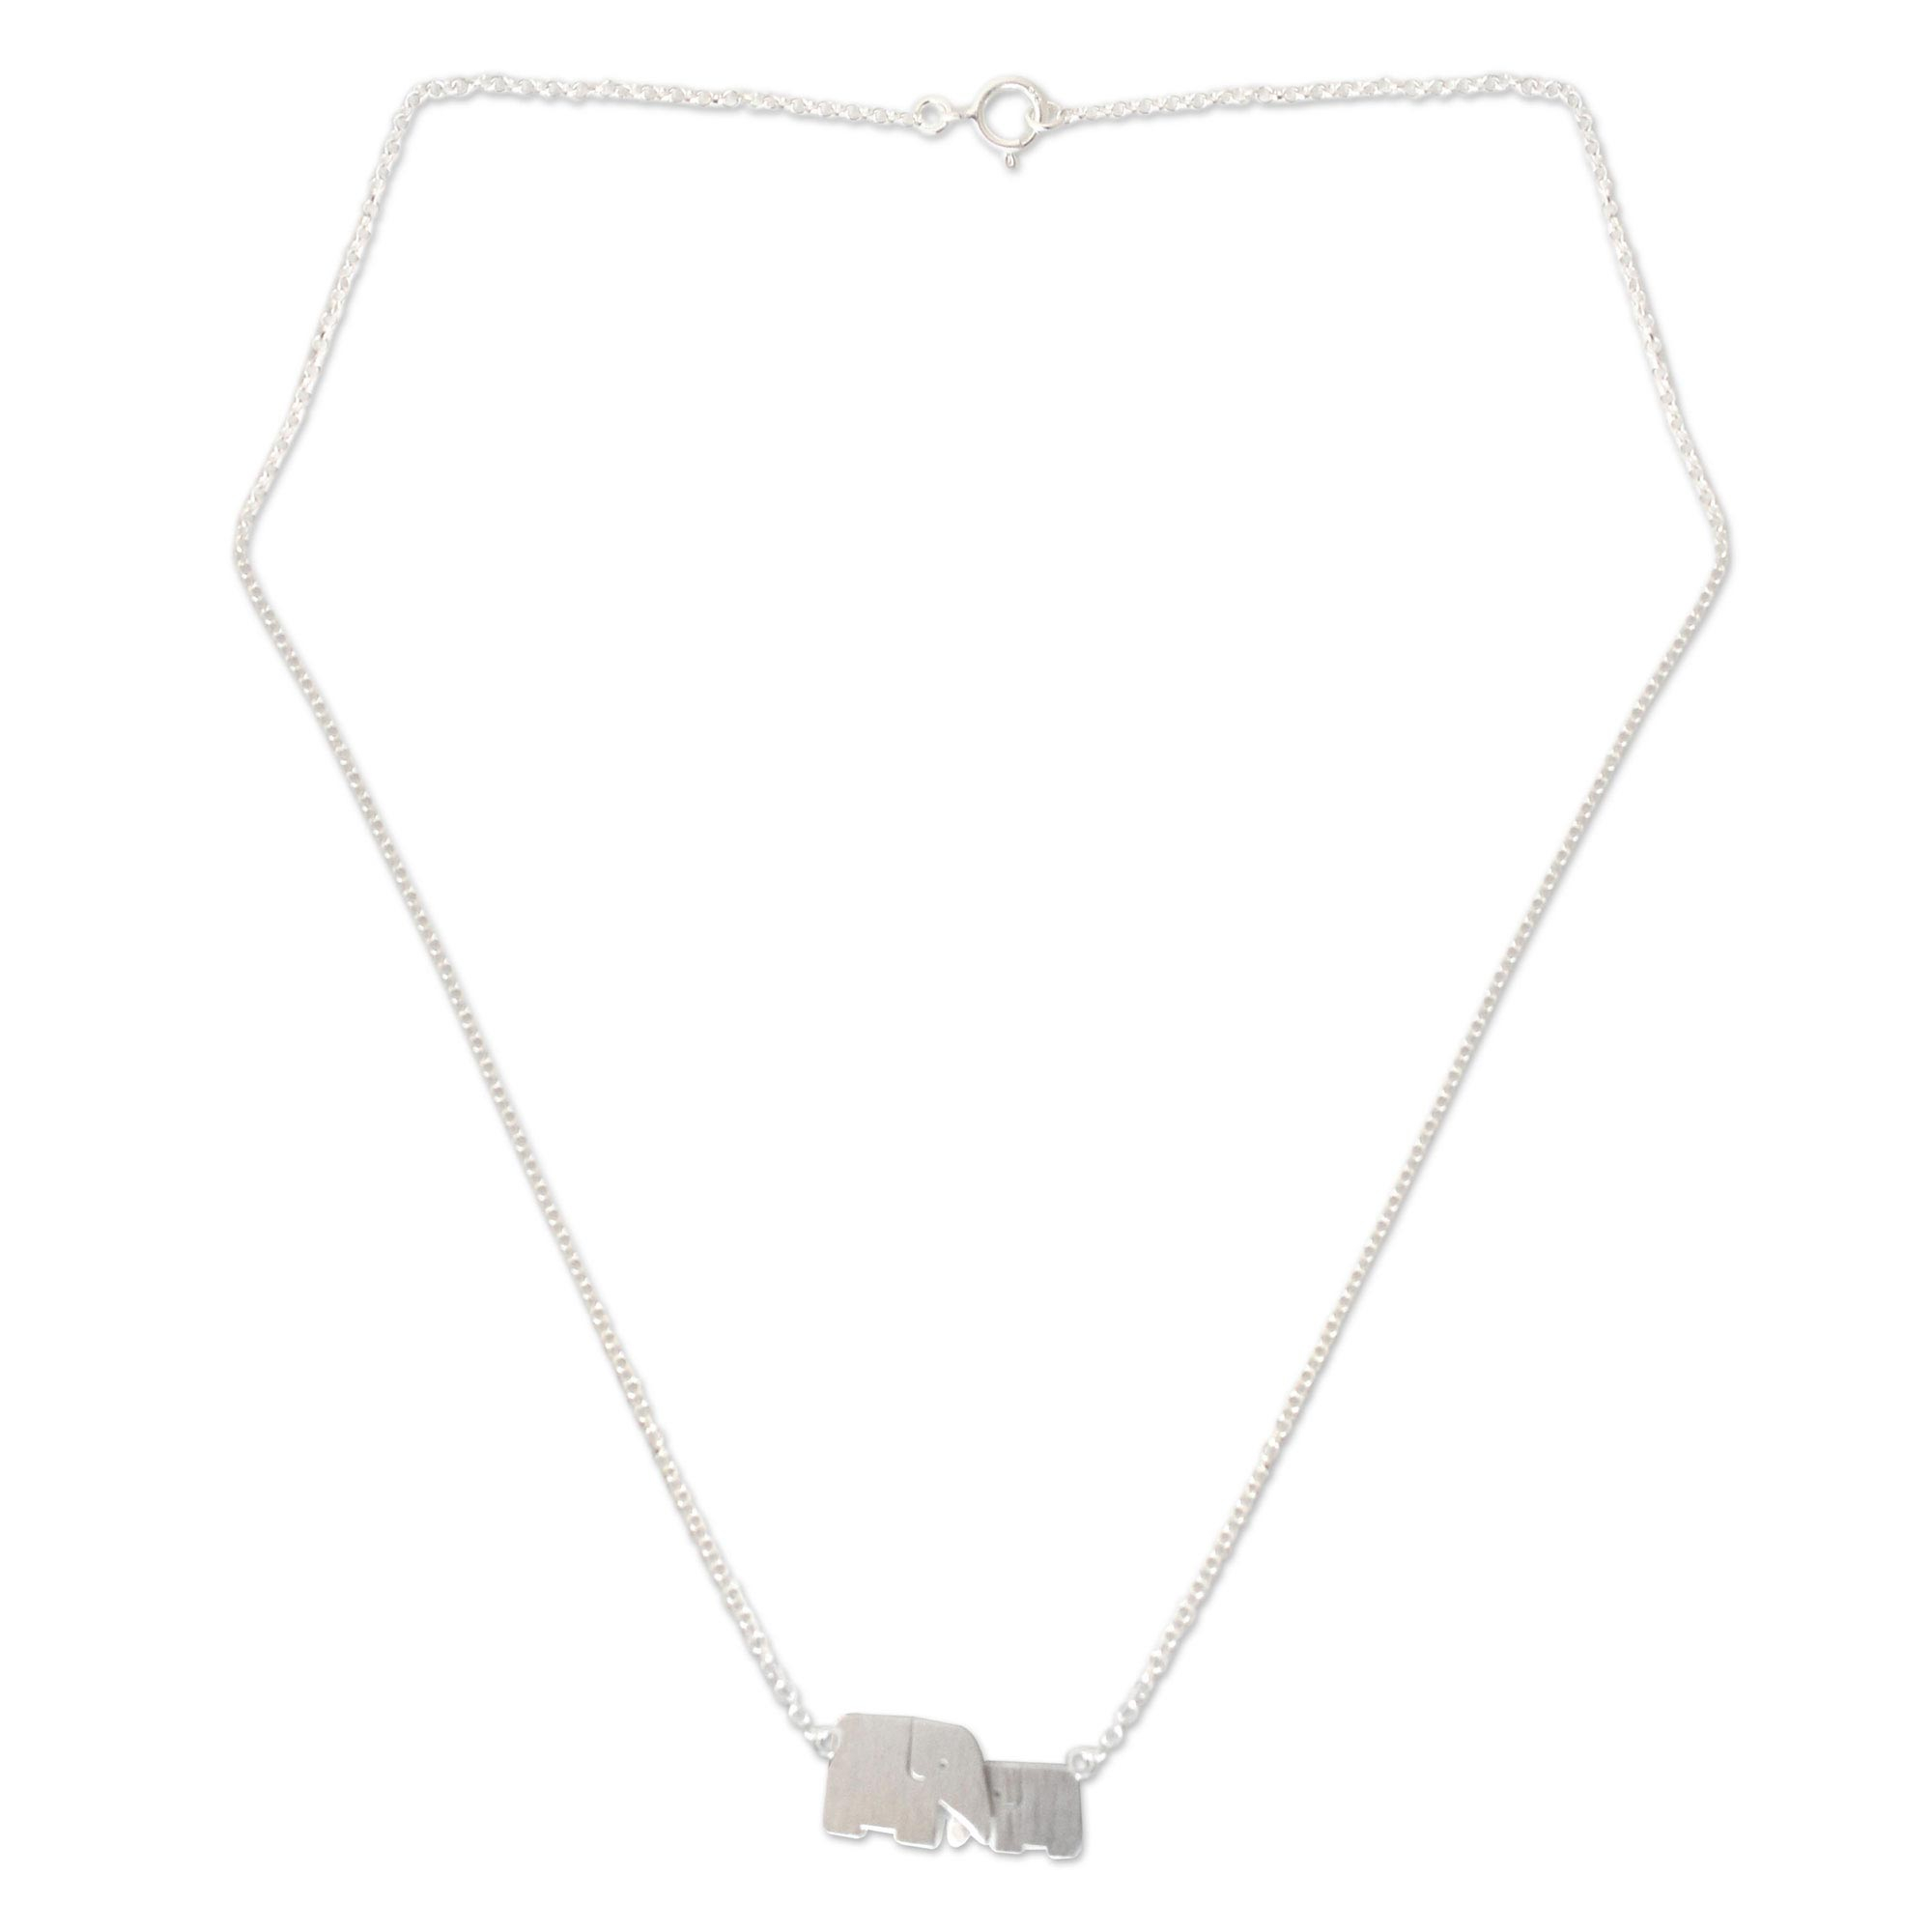 Unicef UK Market | Unique Artisan Necklace - Loving Elephant Jewelry ...